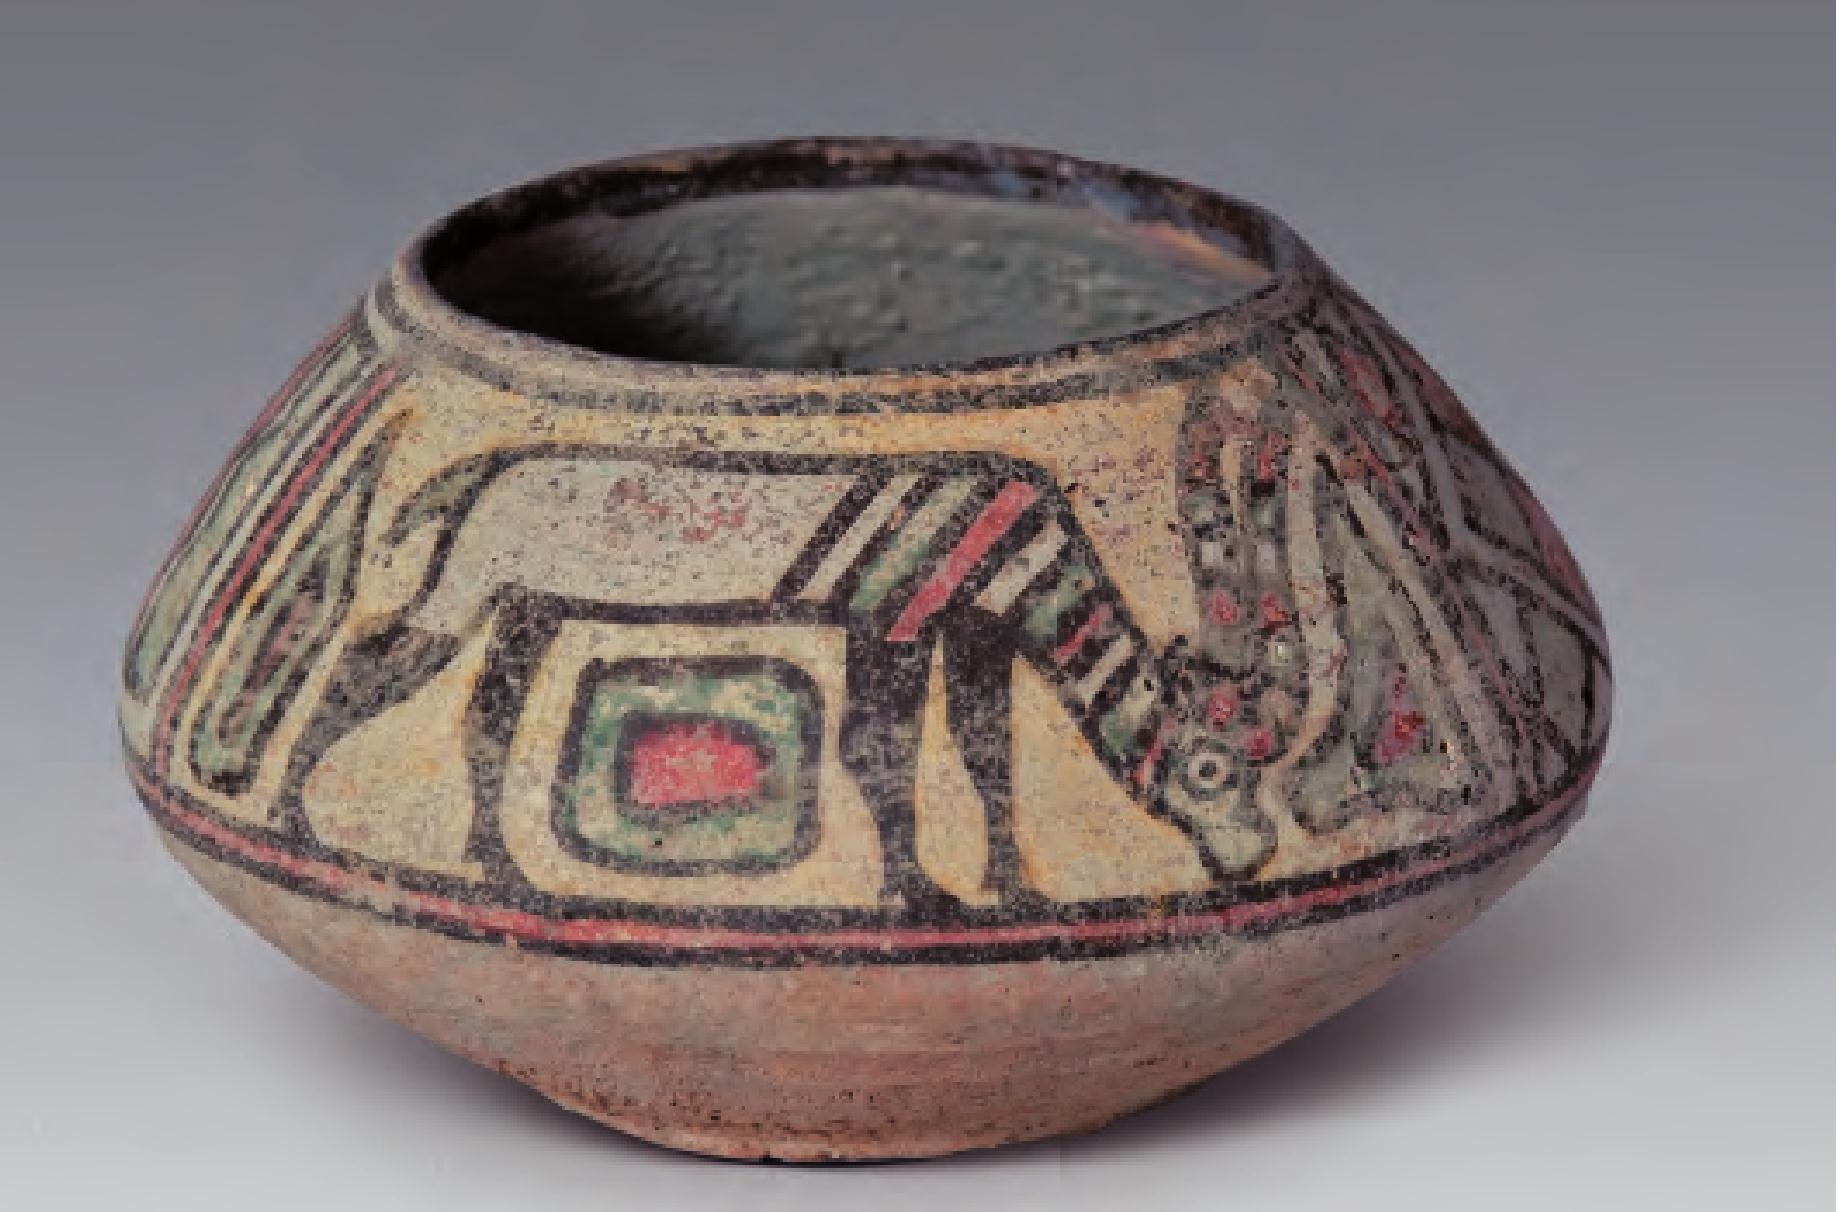 彩陶交媾图——先民性文化的实证-国宝彩陶艺术-图片